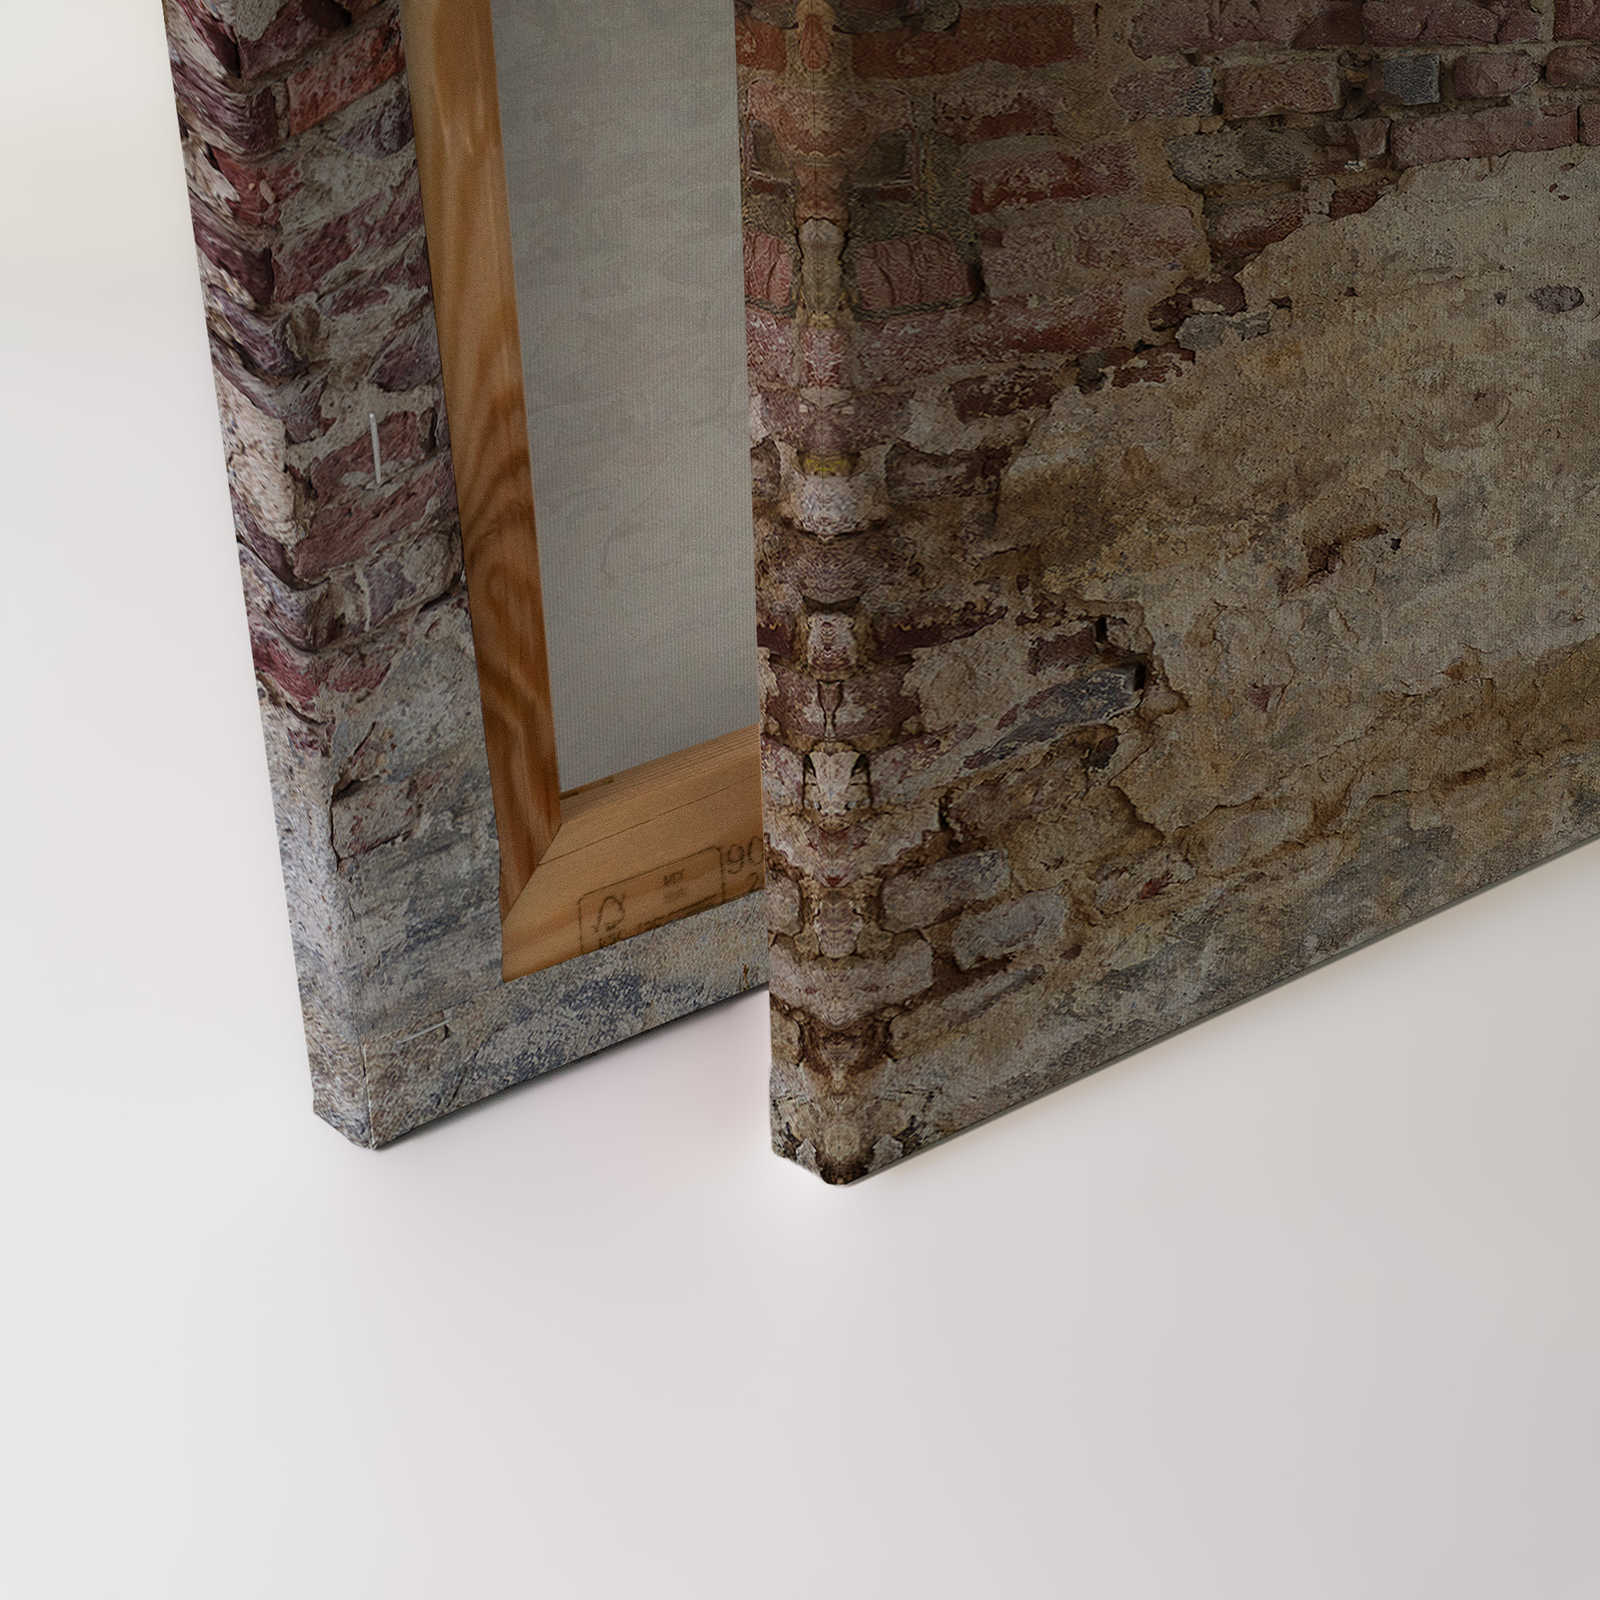             Toile avec mur de briques vintage - 0,90 m x 0,60 m
        